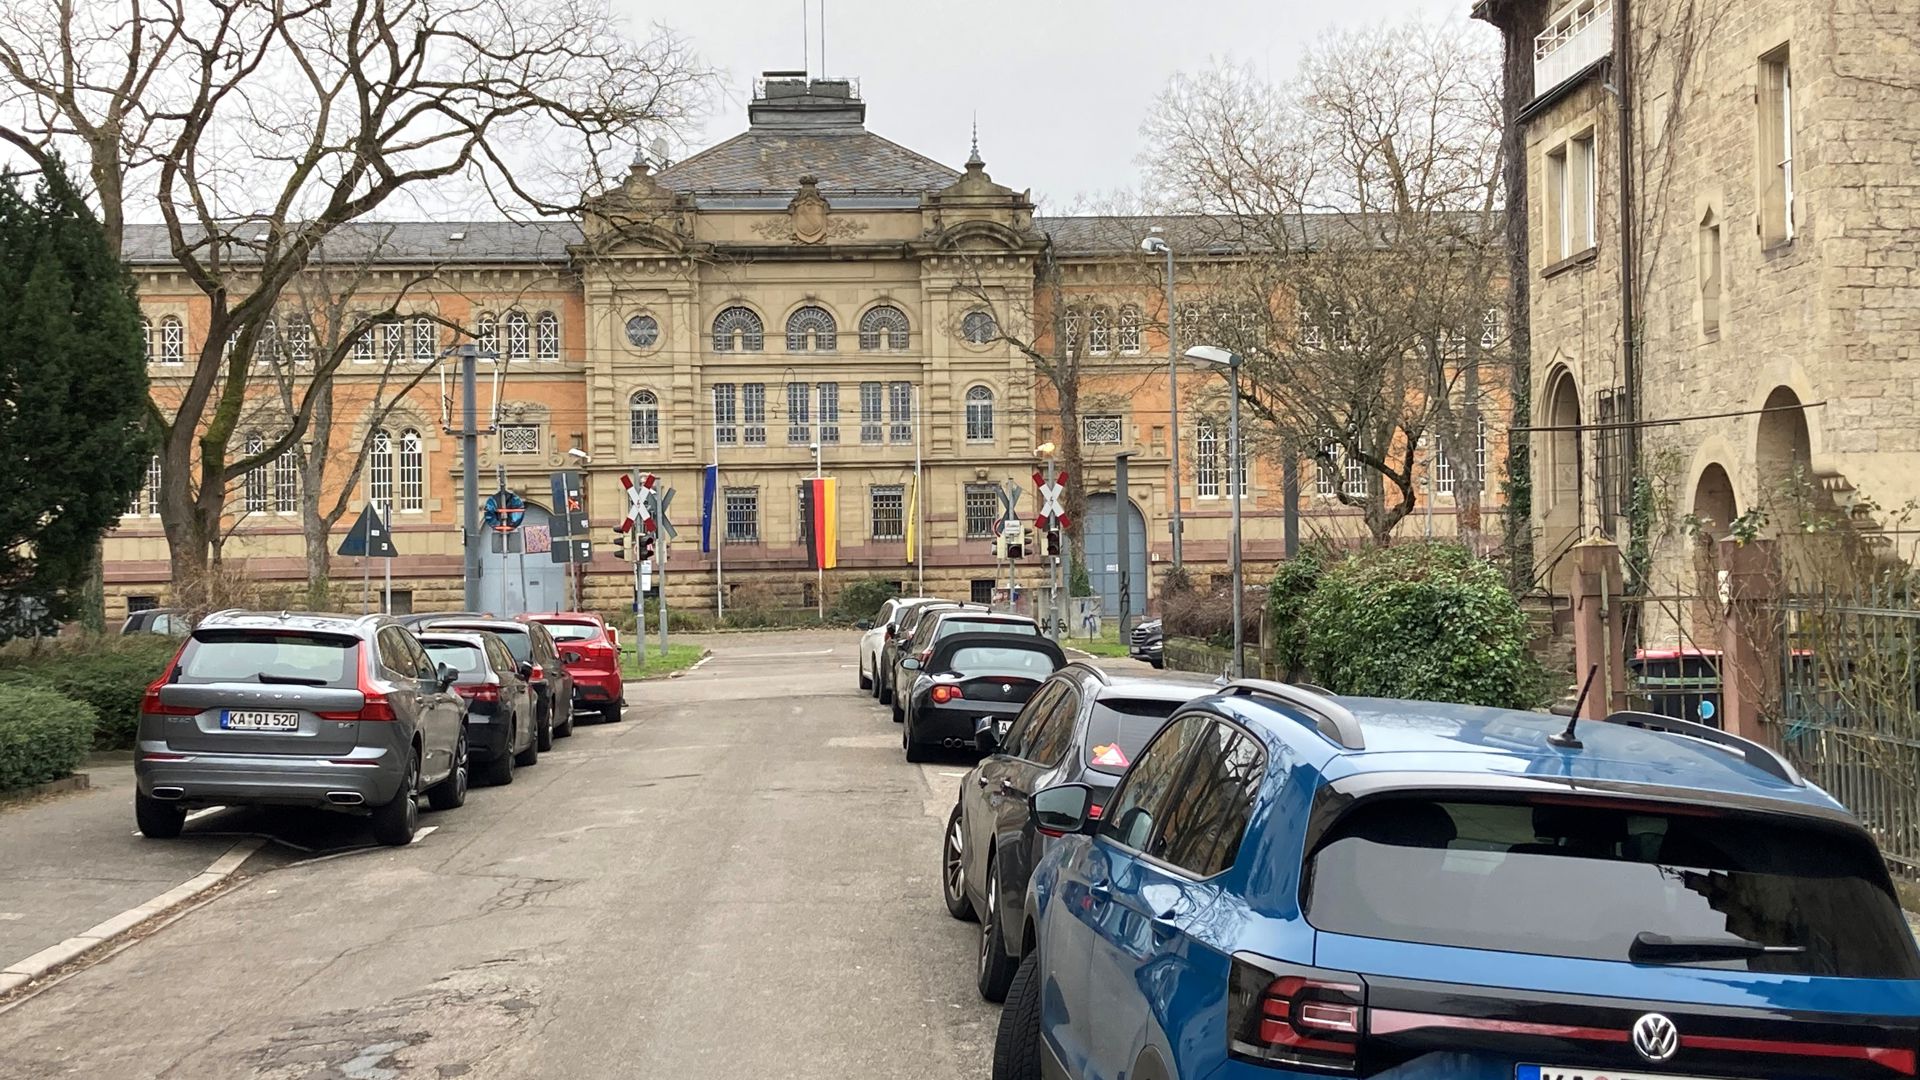 Straftat hinter Gittern: Im Gefängnis in der Karlsruher Riefstahlstraße hat ein 31 Jahre alten Gewalttäter Mitgefangene und Justizbeamte attackiert. Das Landgericht verurteilte den Mann jetzt zu einer empfindlichen Haftstrafe.